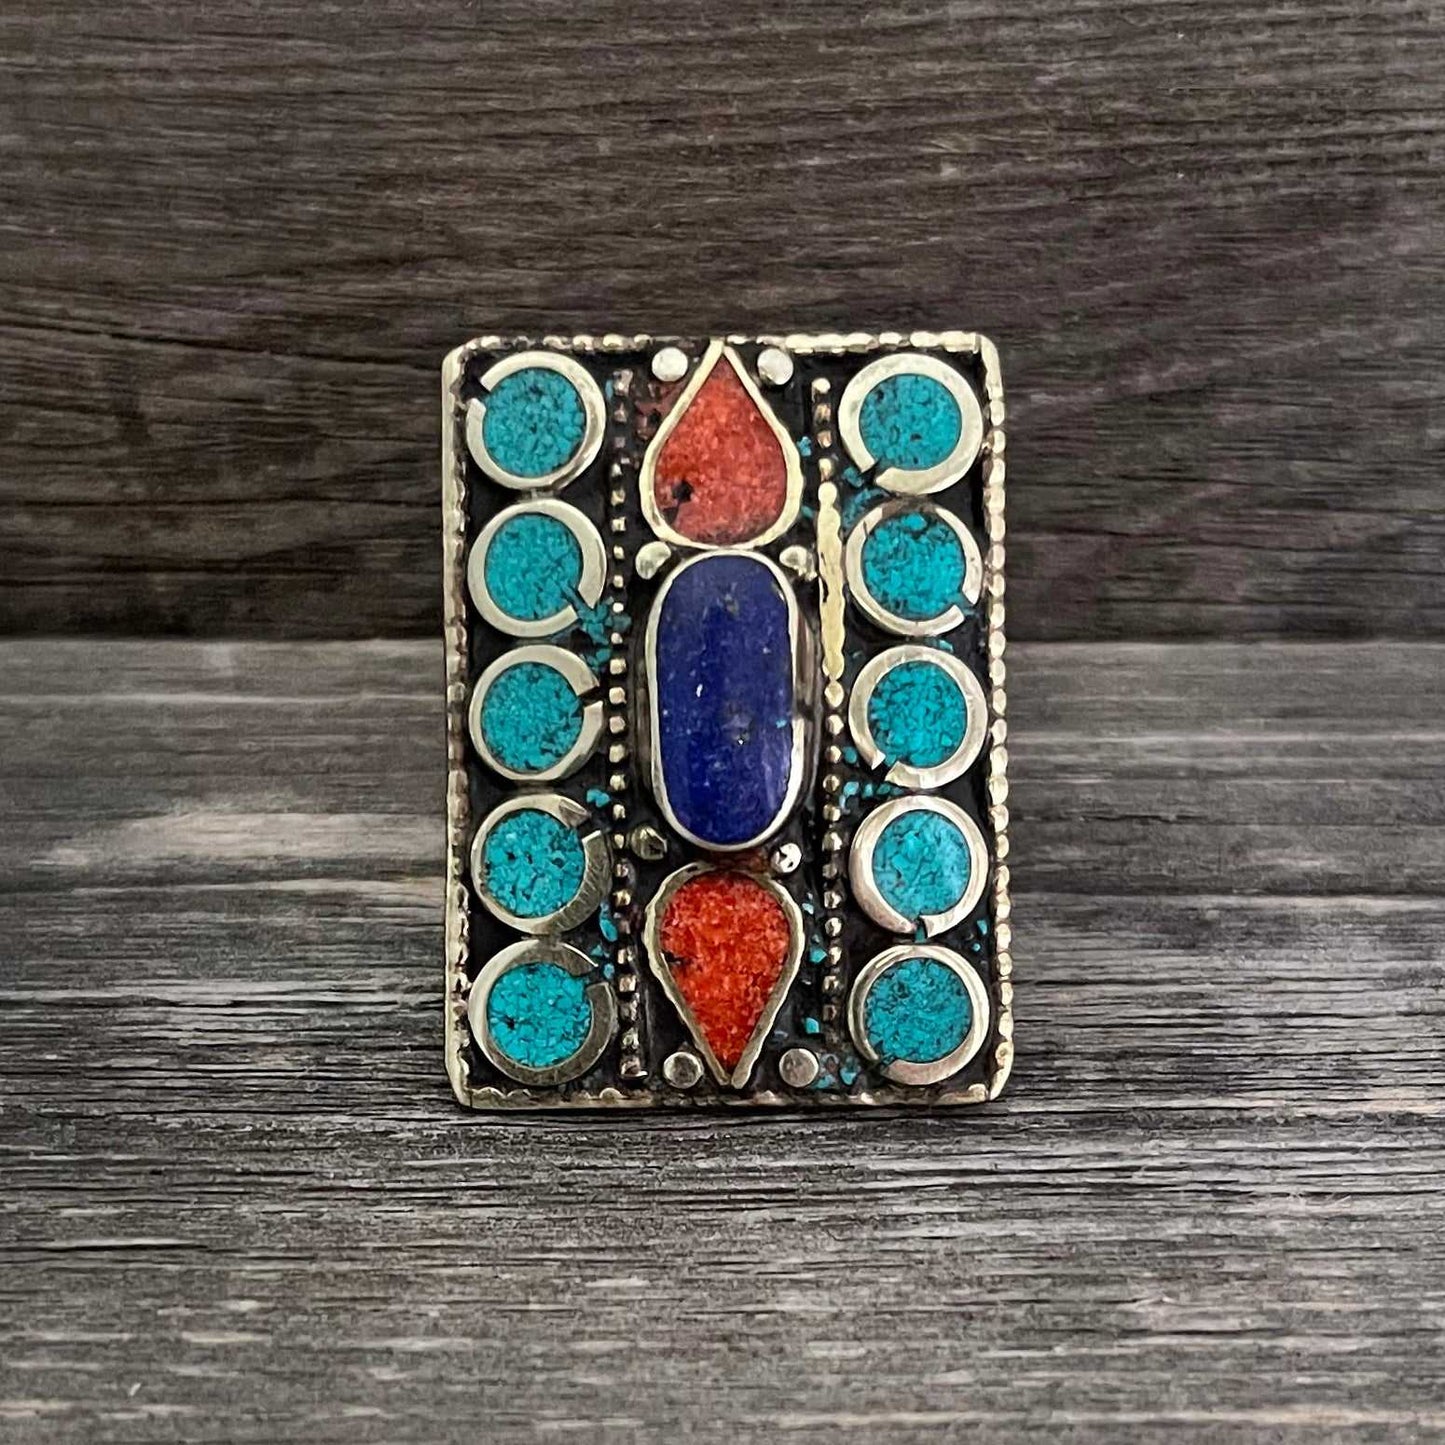 Big statement rectangular Tibetan ring with Turquoise, Coral and Lapis Lazuli gemstone